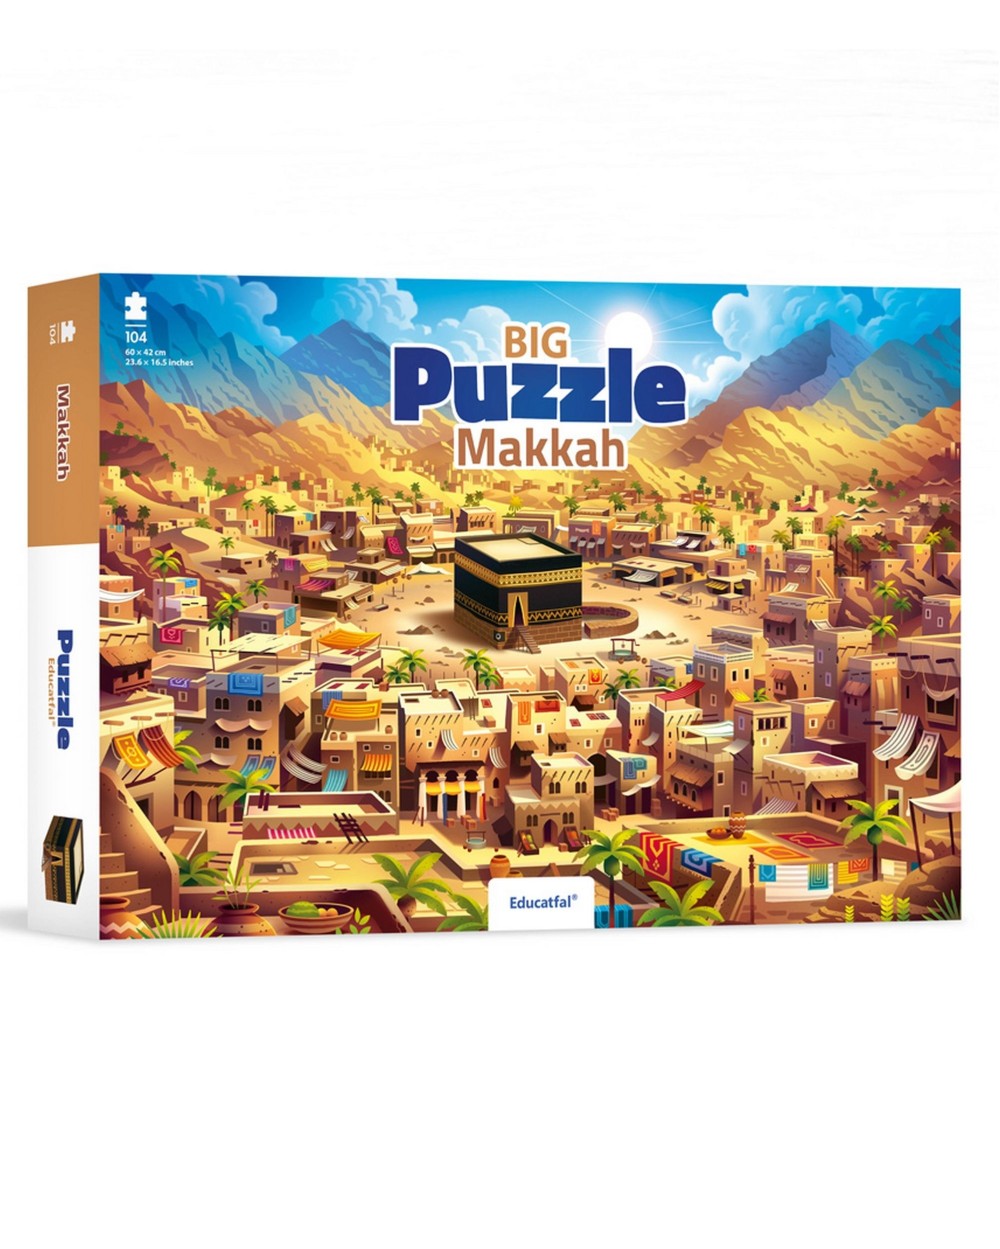 Puzzle Makkah 104 pieces Educatfal